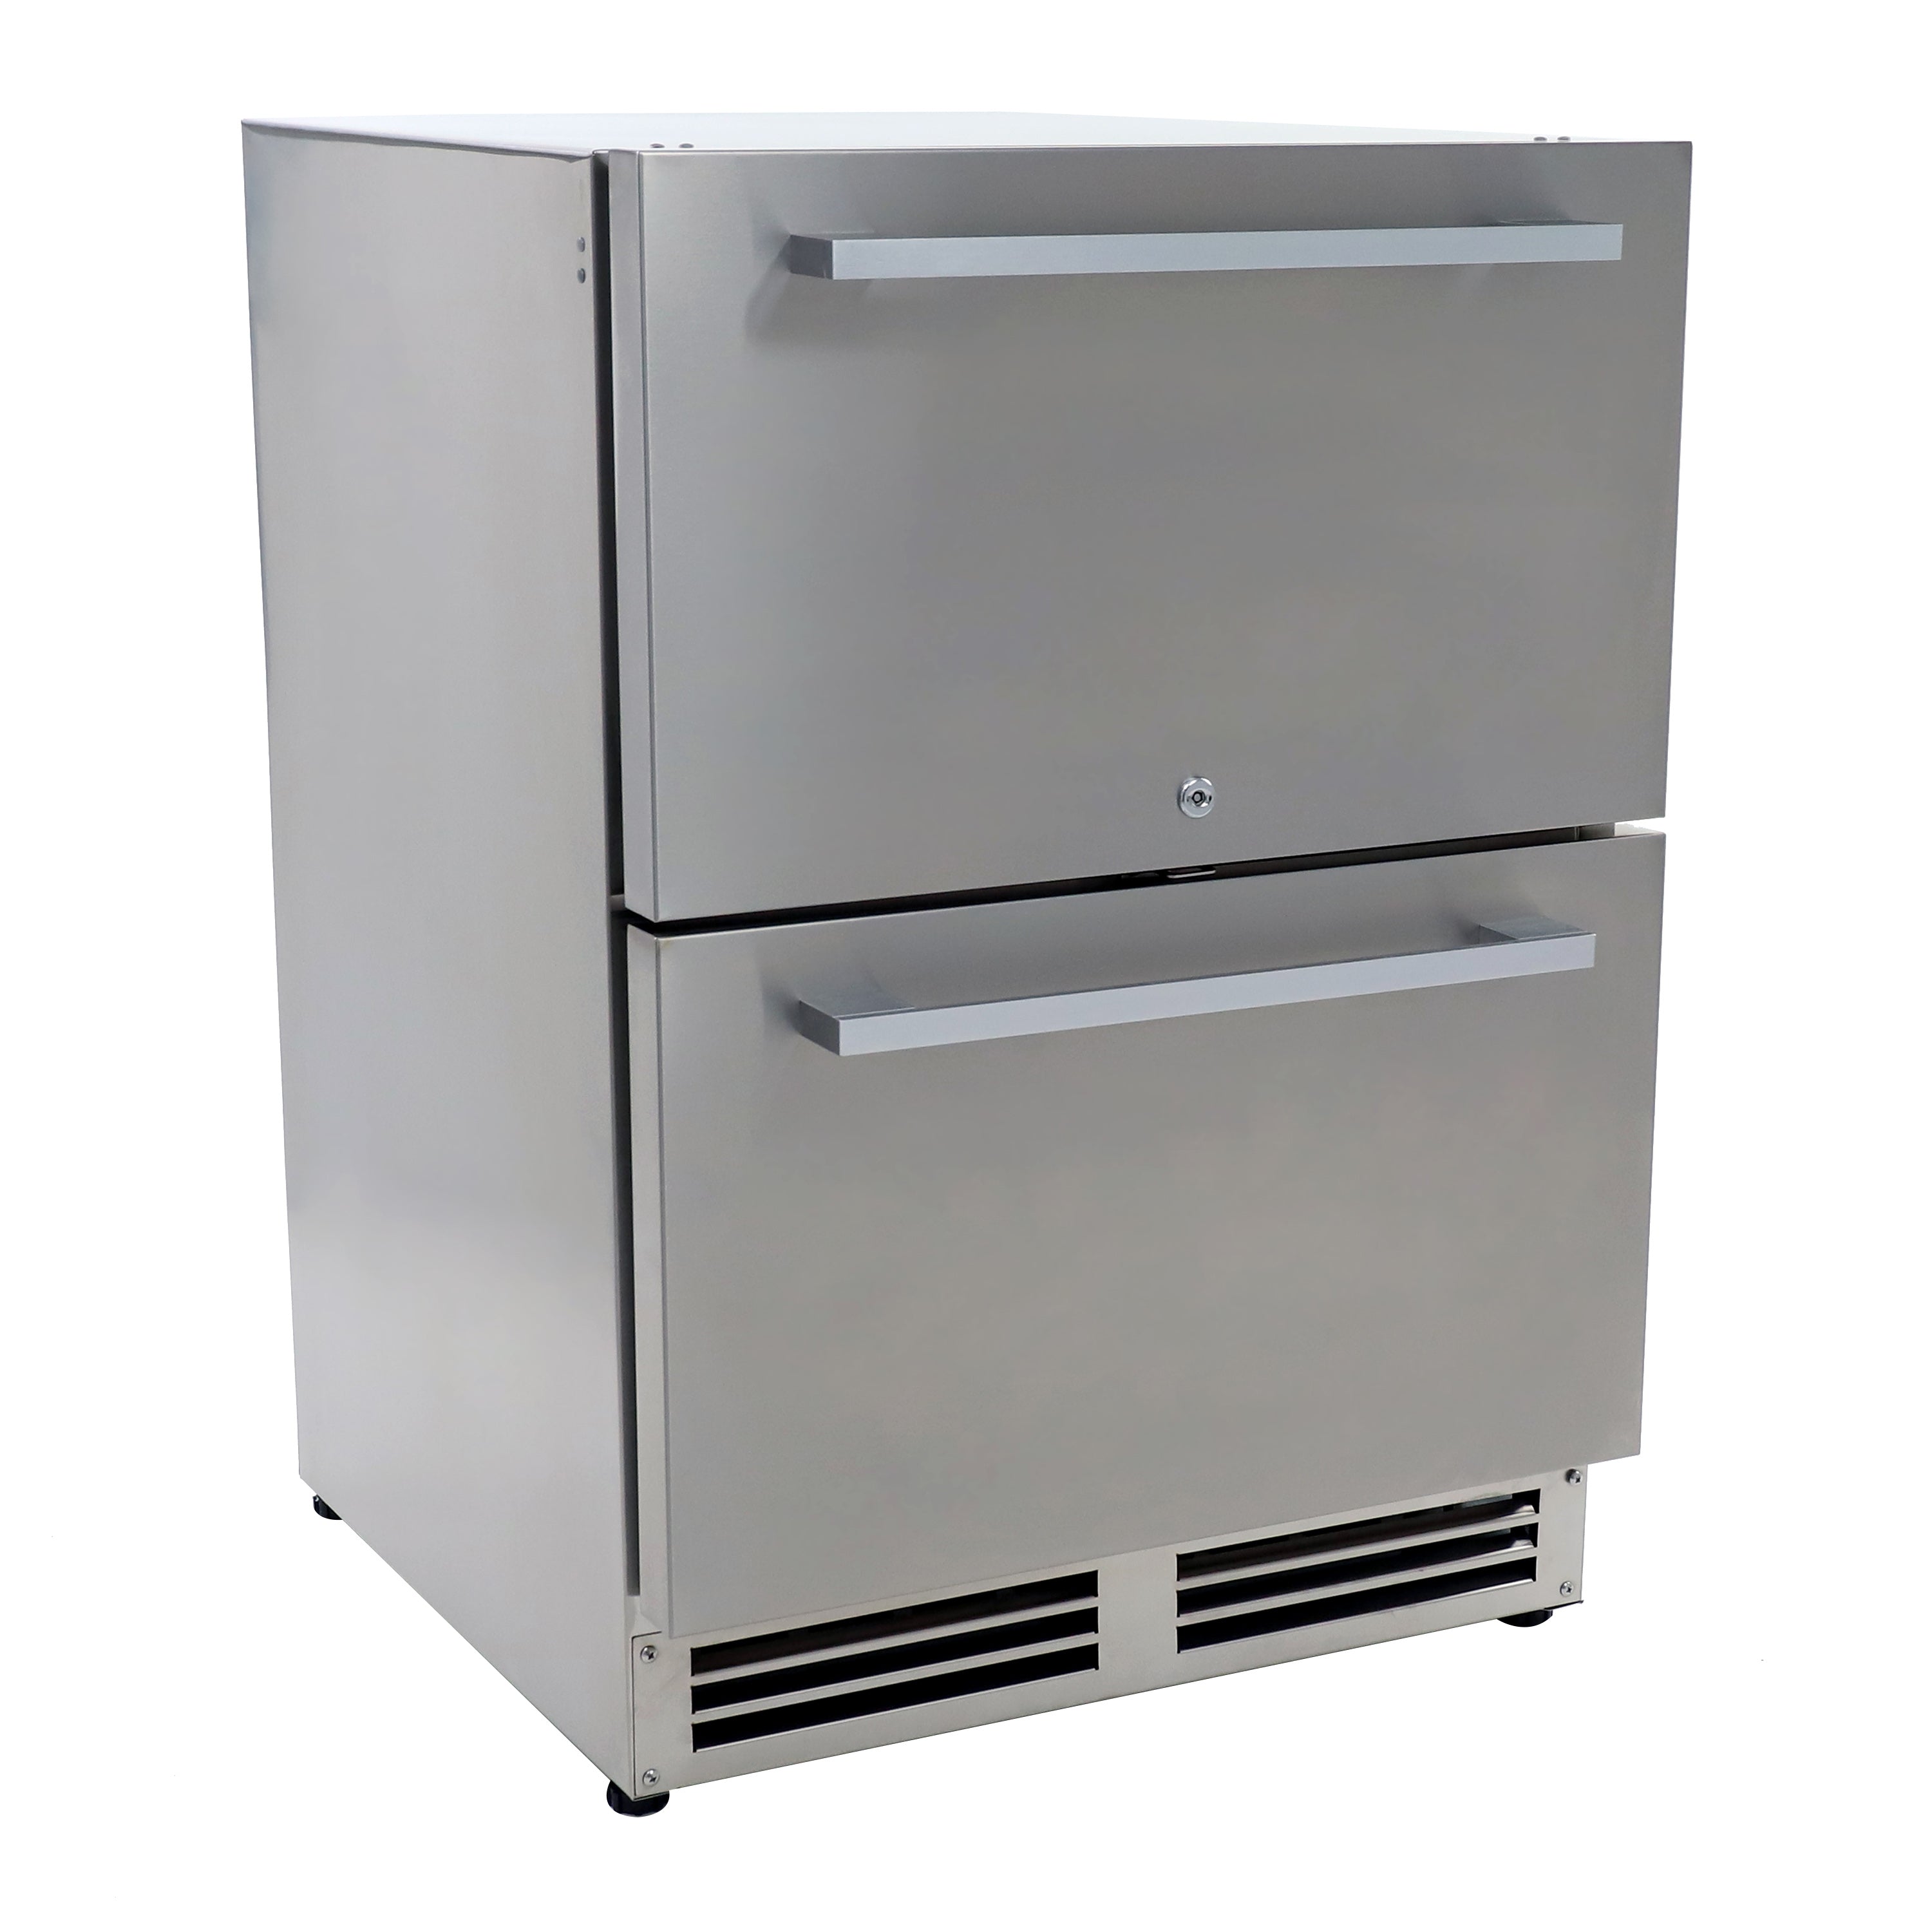 Avanti - OR525U5D, Avanti ELITE Series Indoor/Outdoor Undercounter Drawer Refrigerator, 5.2 cu. ft., in Stainless Steel